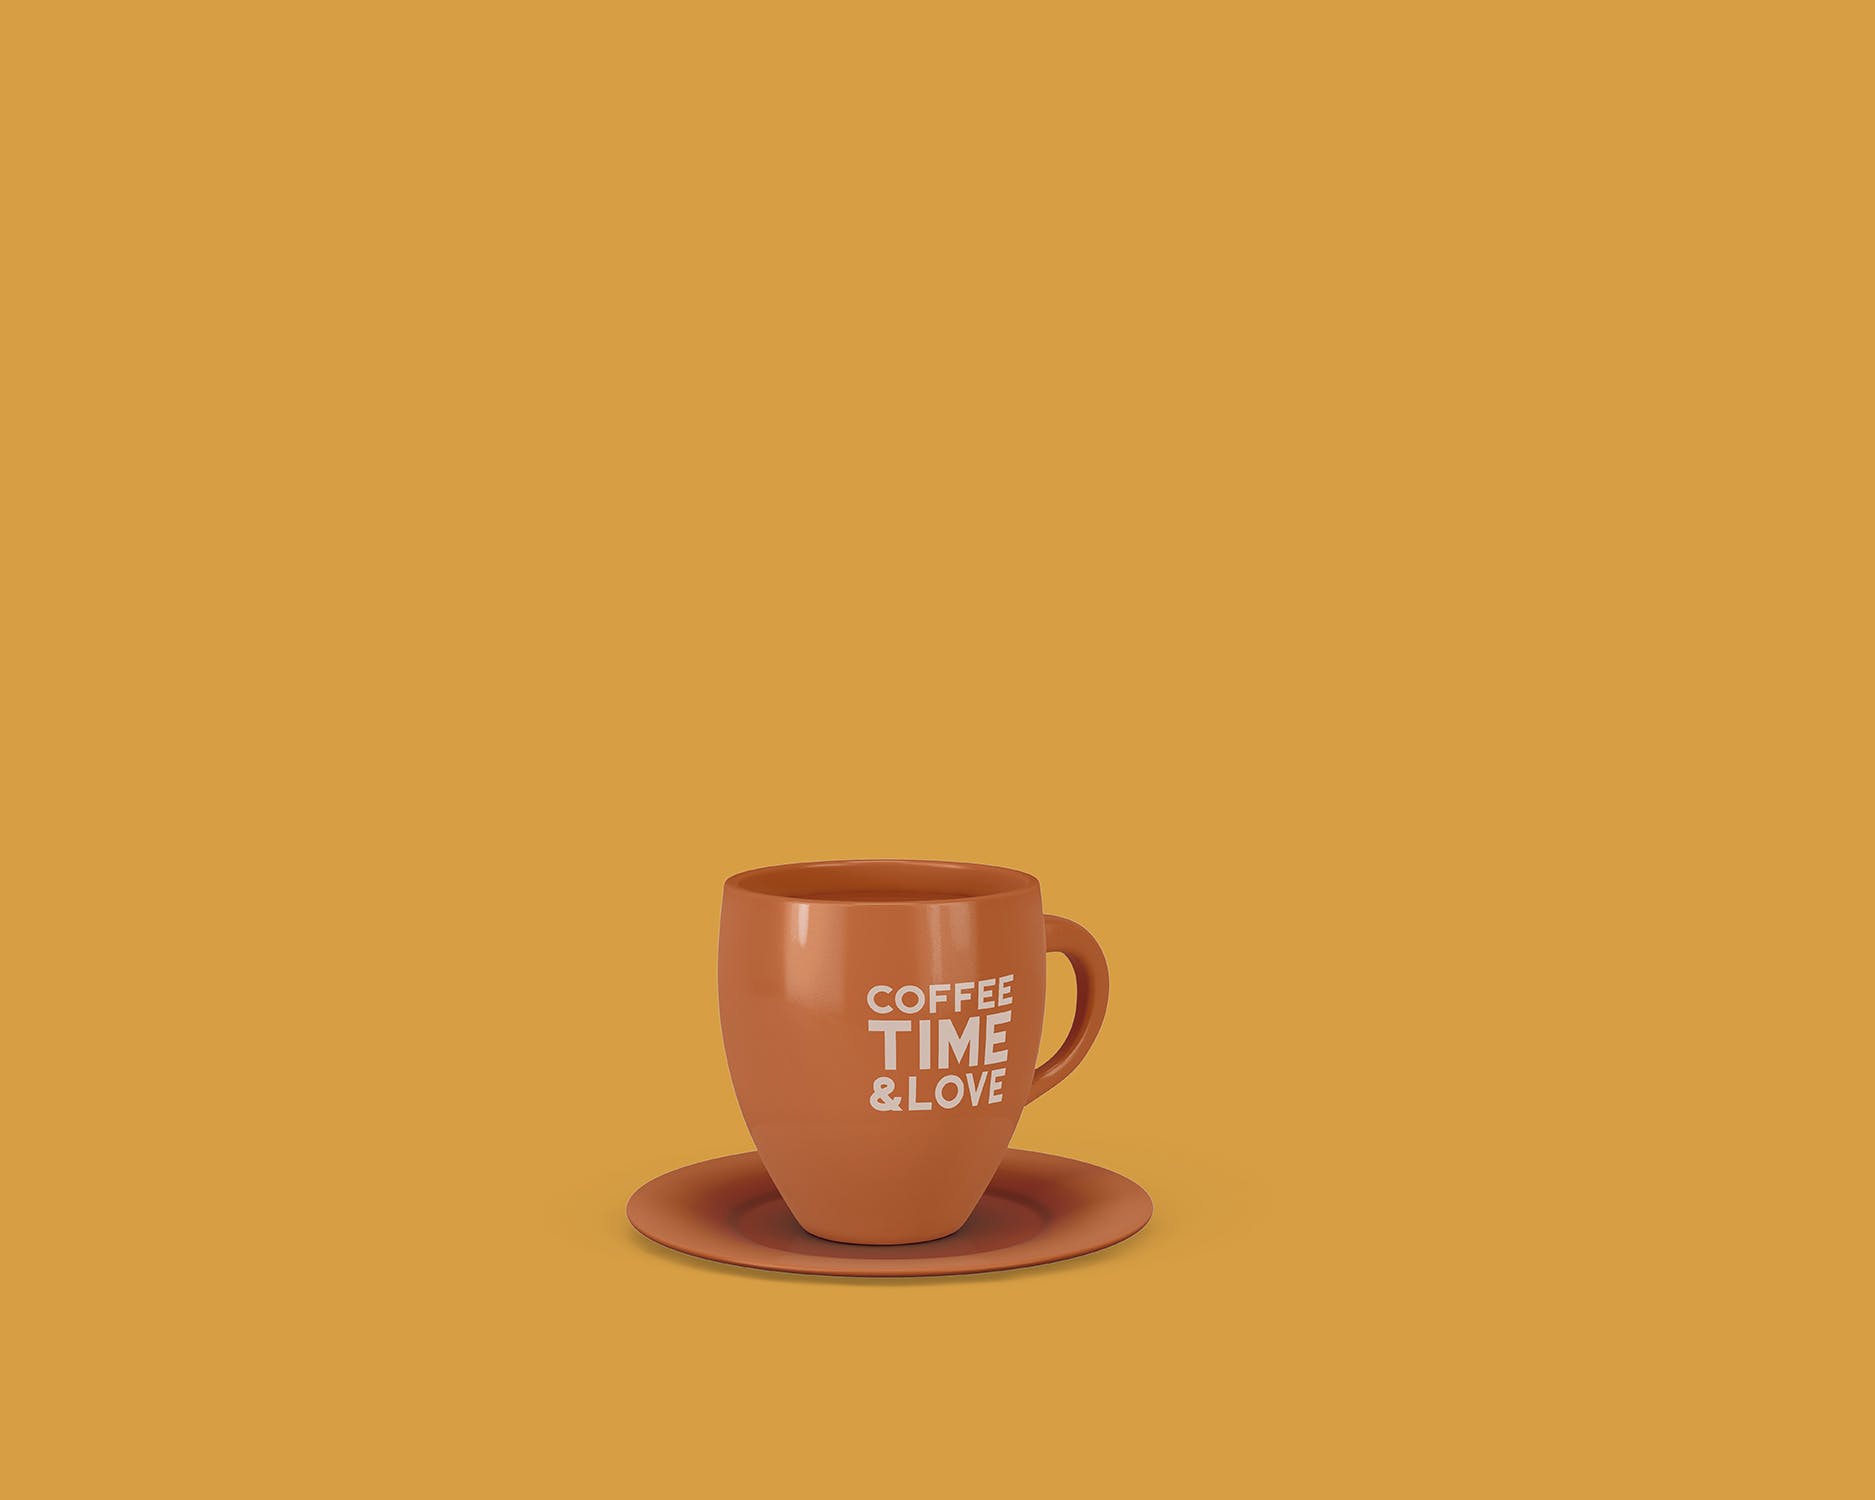 8个咖啡马克杯设计图第一素材精选 8 Coffee Cup Mockups插图(5)